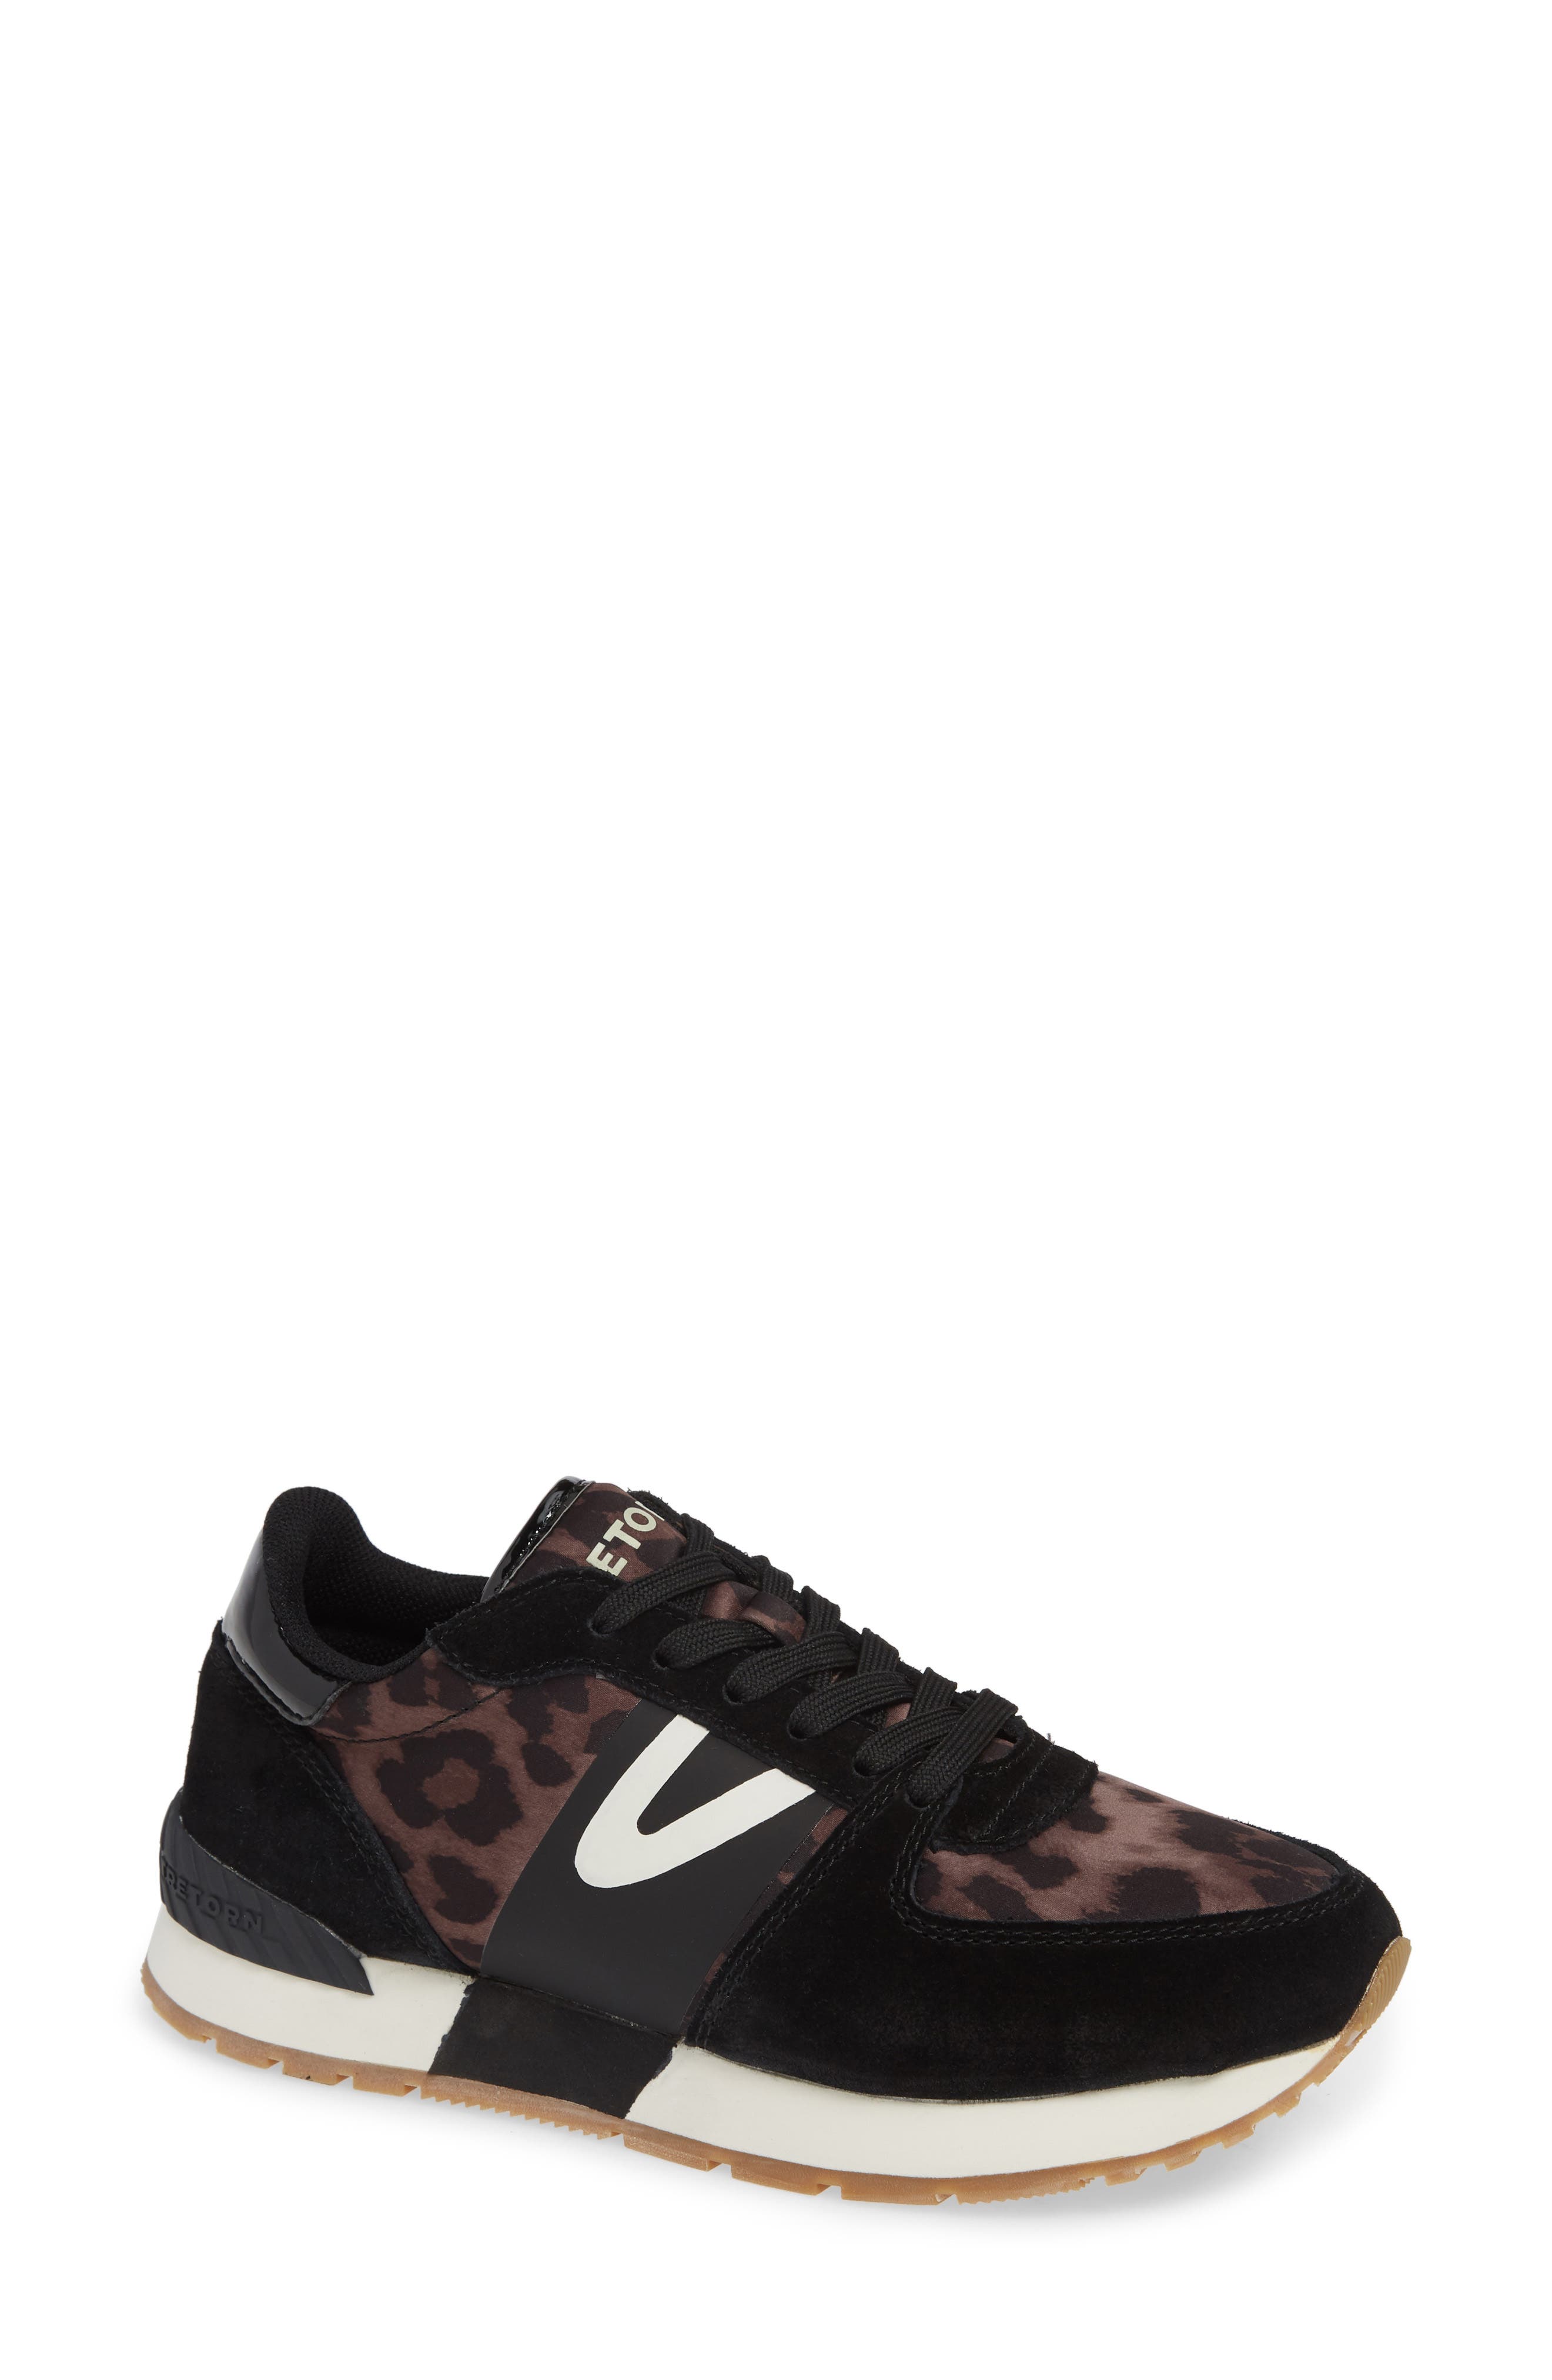 tretorn sneakers leopard